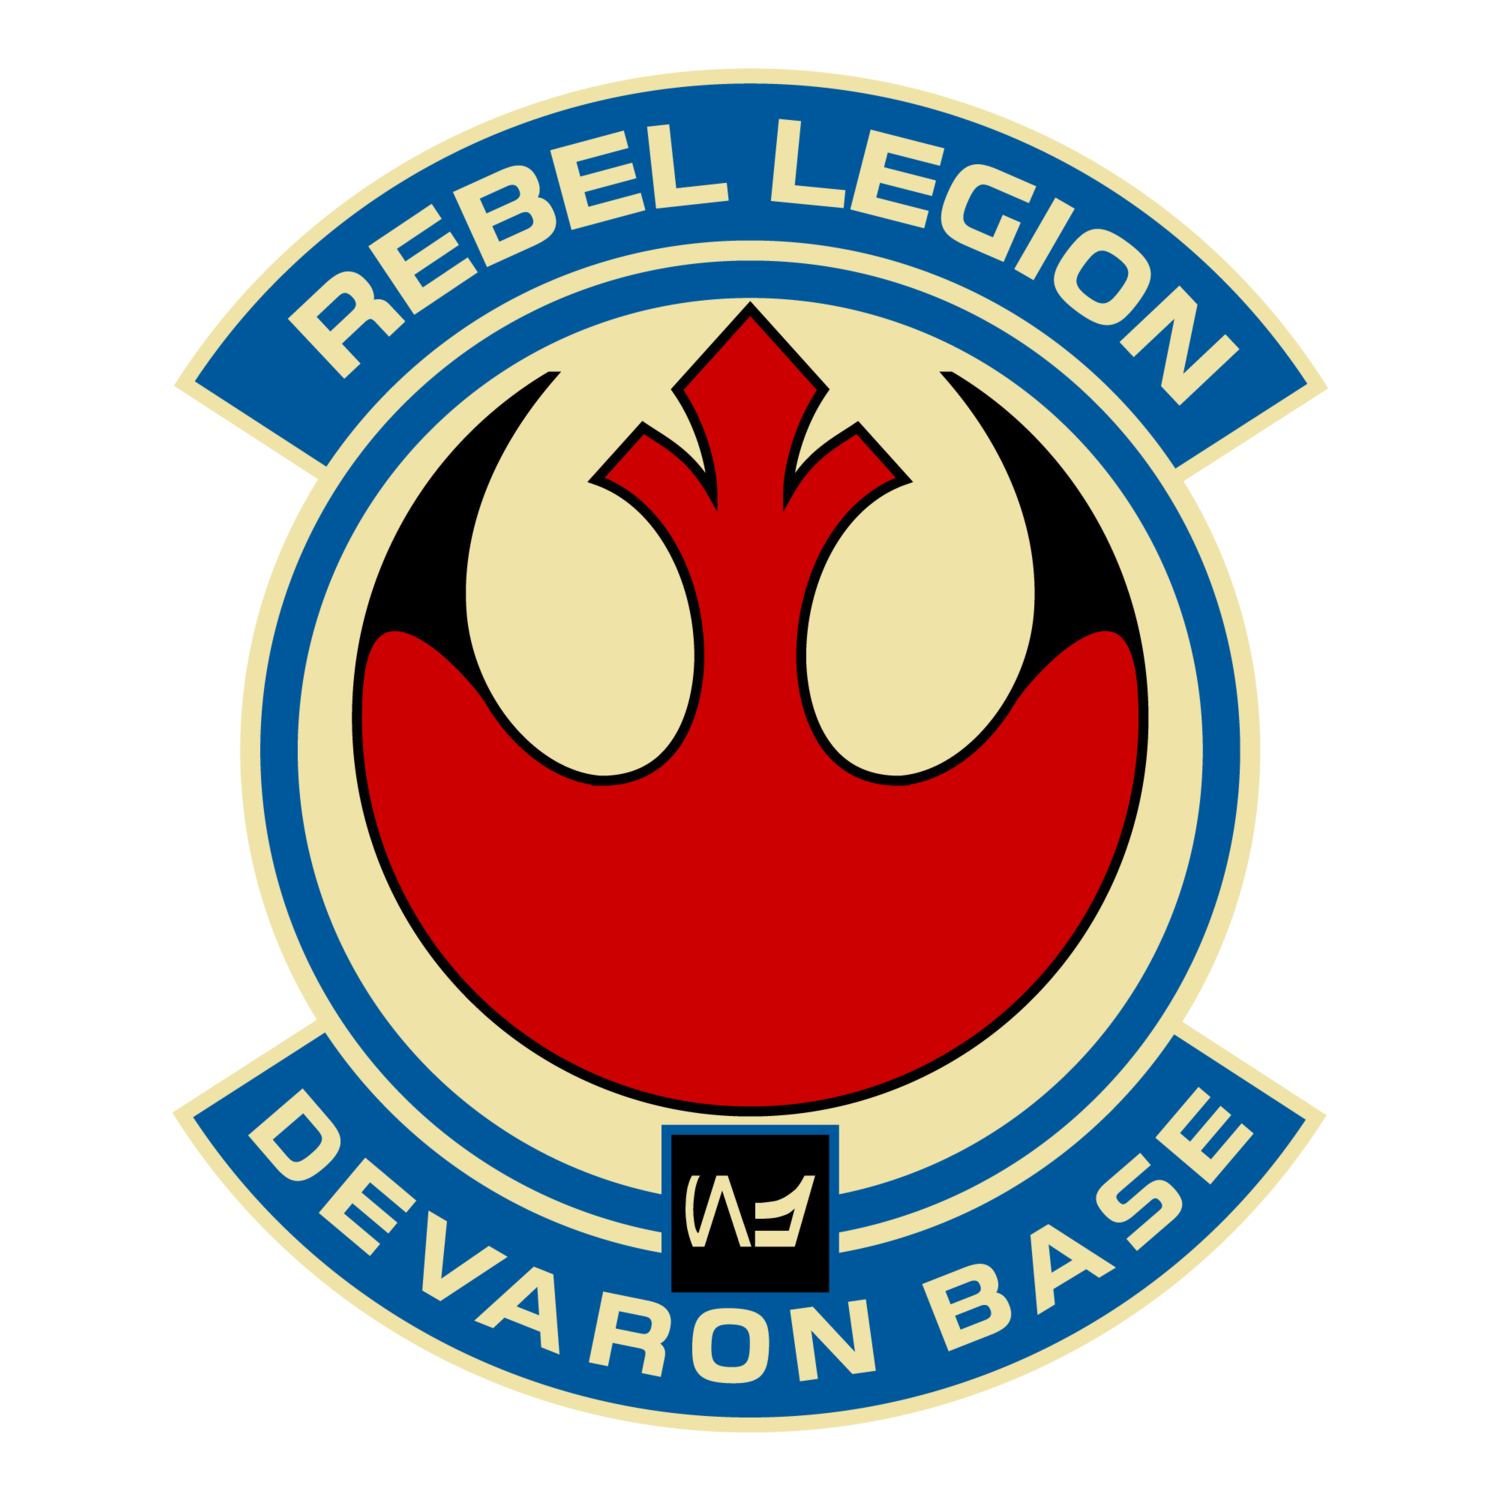 Devaron Base - Rebel Legion